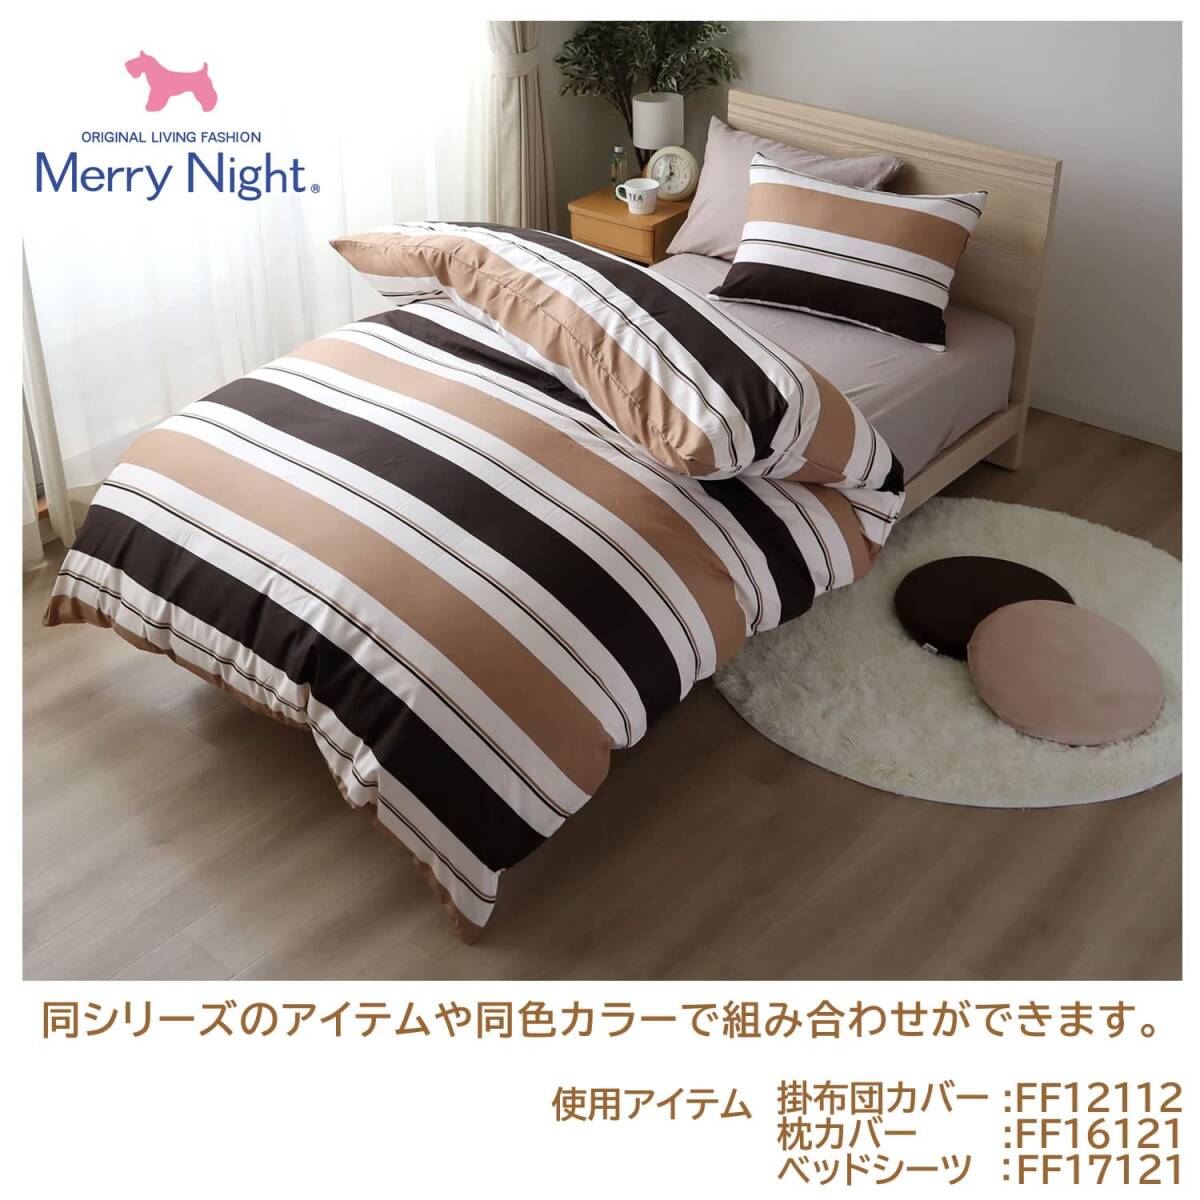 me Lee Night (Merry Night) подушка покрытие [ двойной окантовка ] Brown примерно 43×63cm застежка-молния тип .... inserting ...... скорость .